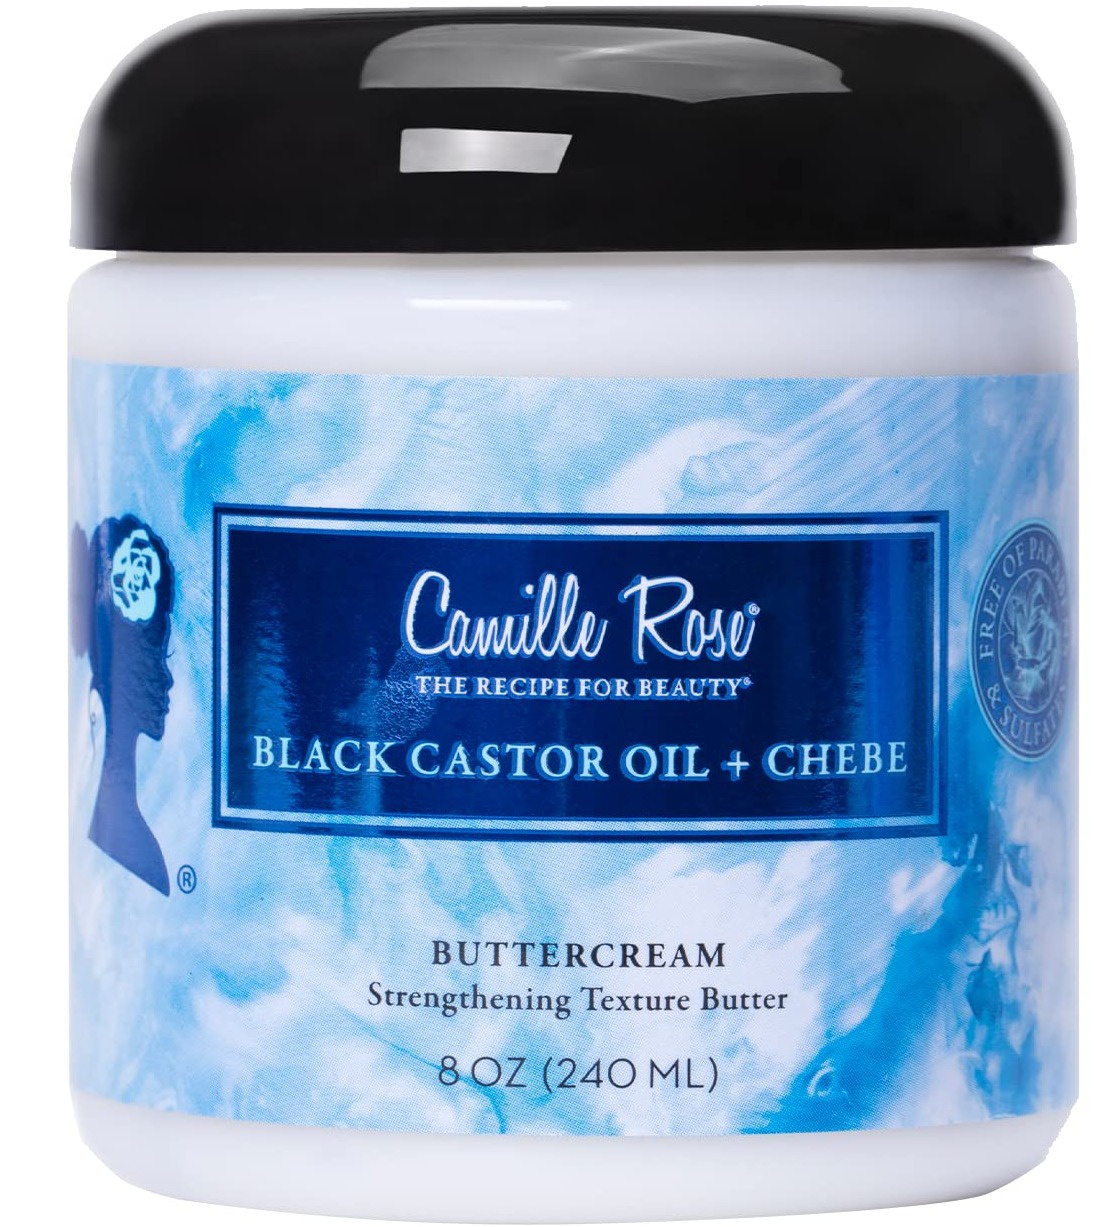 Camille Rose Black Castor Oil + Chebe Buttercream